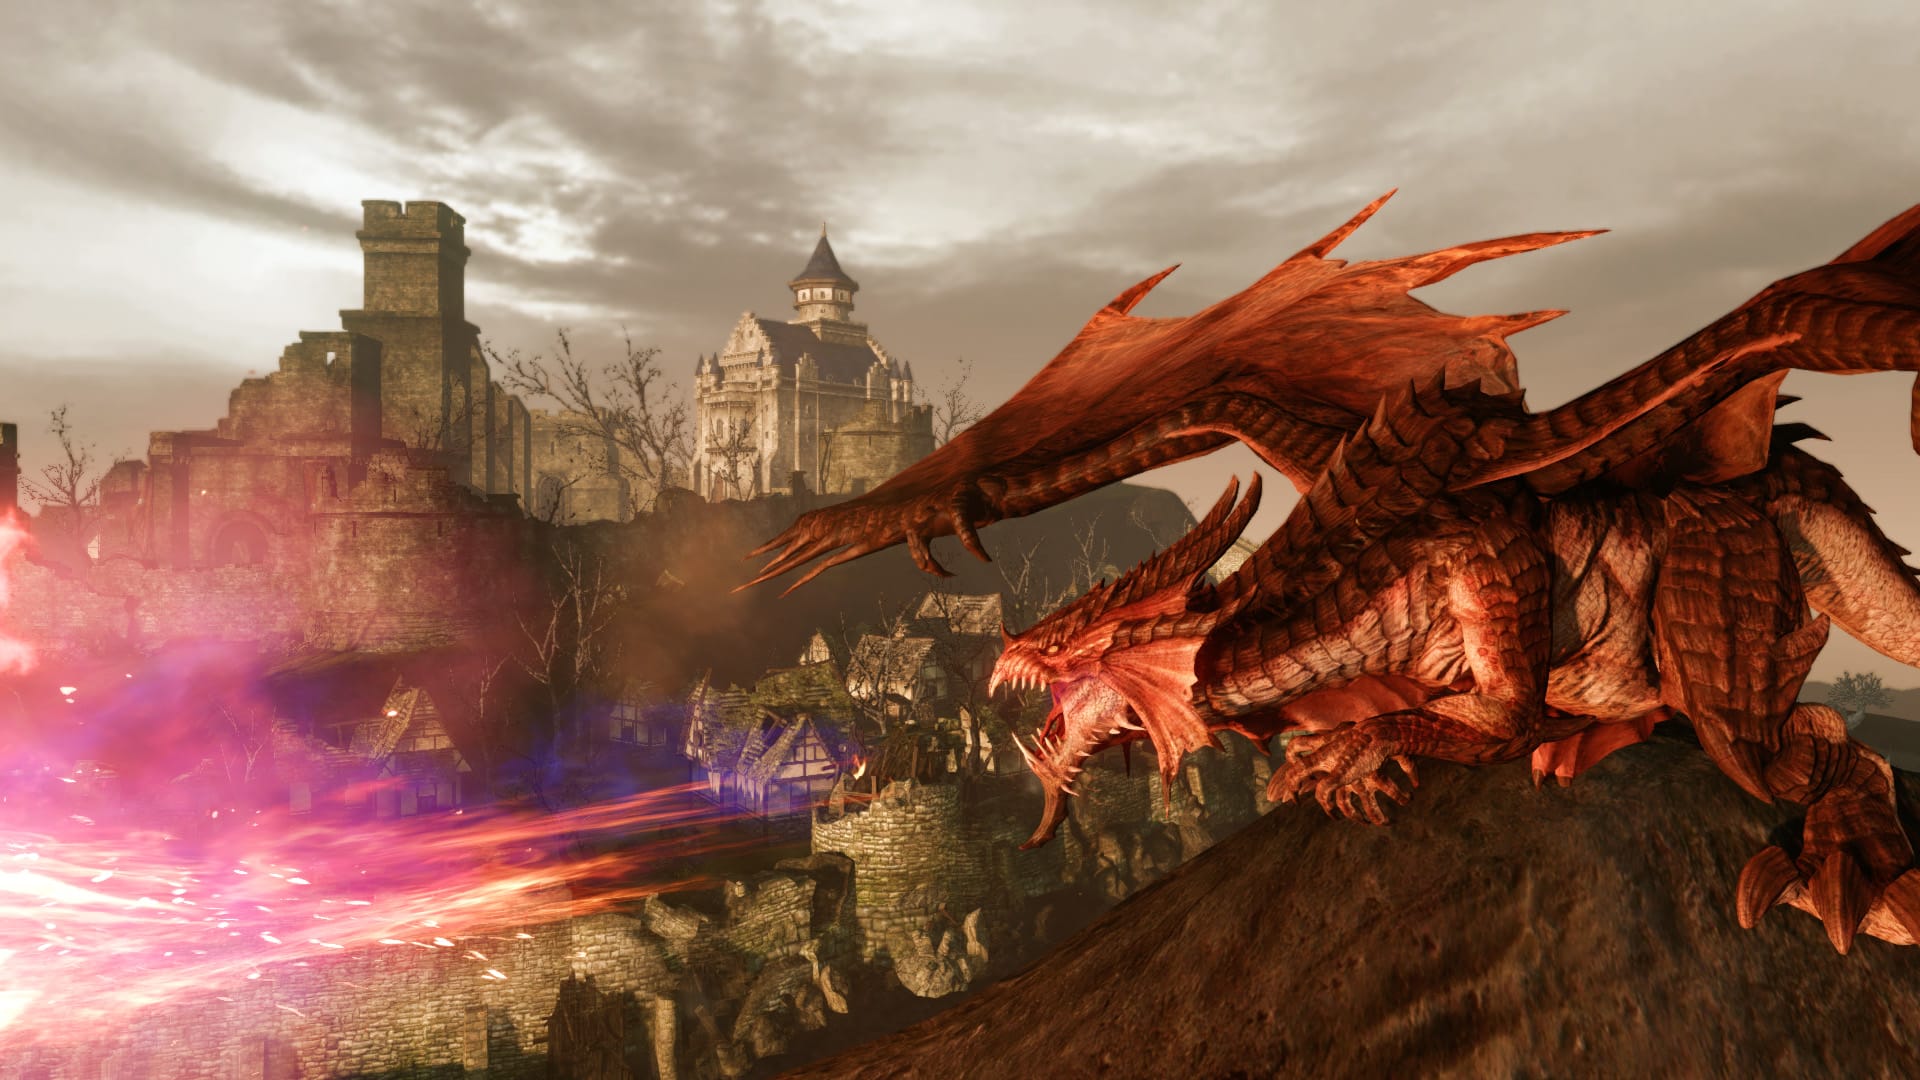 En iyi MMORPG Oyunları: ArceHage. Resim bir kasabanın yakınındaki bir ejderhayı gösterir